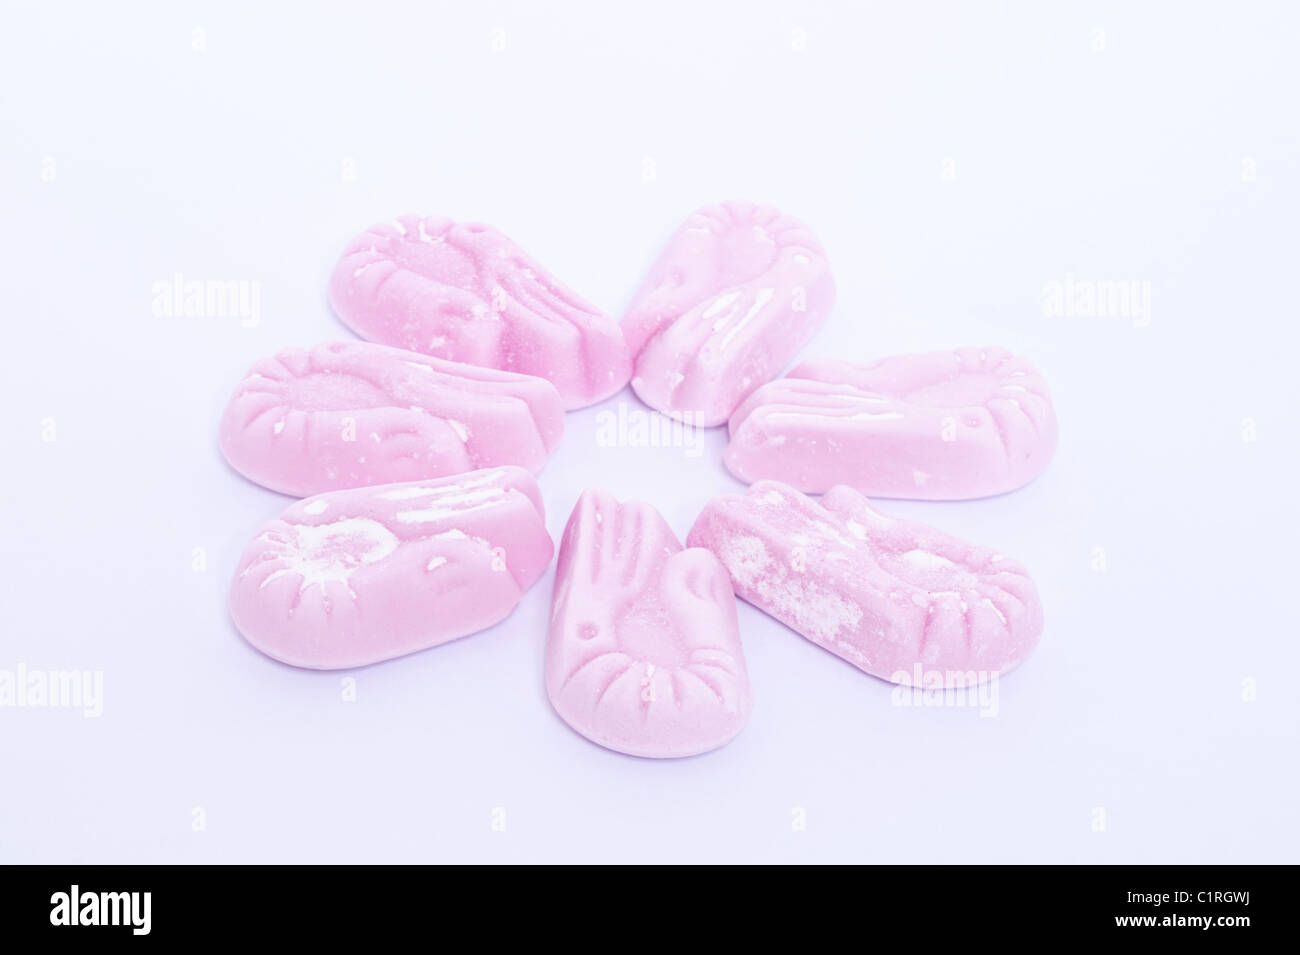 Una selezione di aroma di lampone gamberetti dolci tradizionali su sfondo bianco Foto Stock